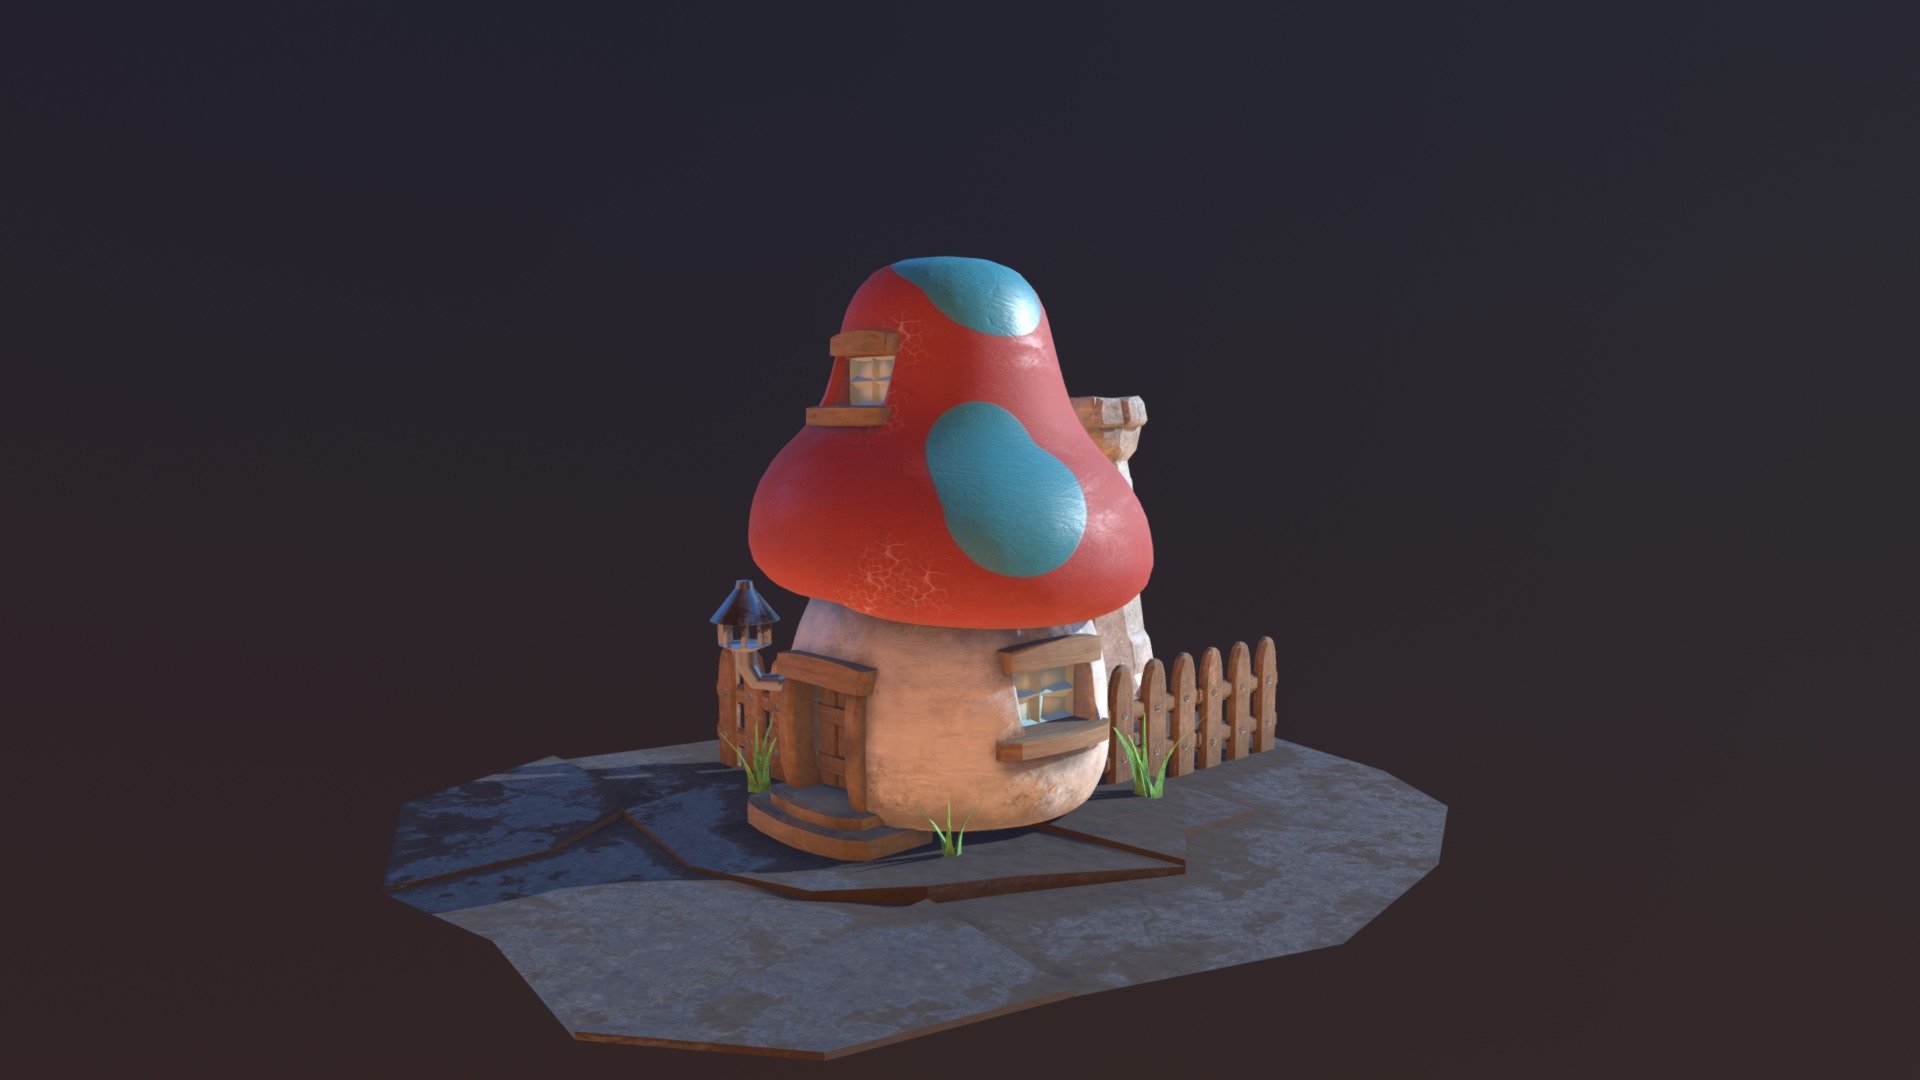 A tiny fantasy house inspired by Smurfs cartoon - Smurf's Hut - 3D model by Karolina Zygadlo (@karolinazygadlo) 3d model